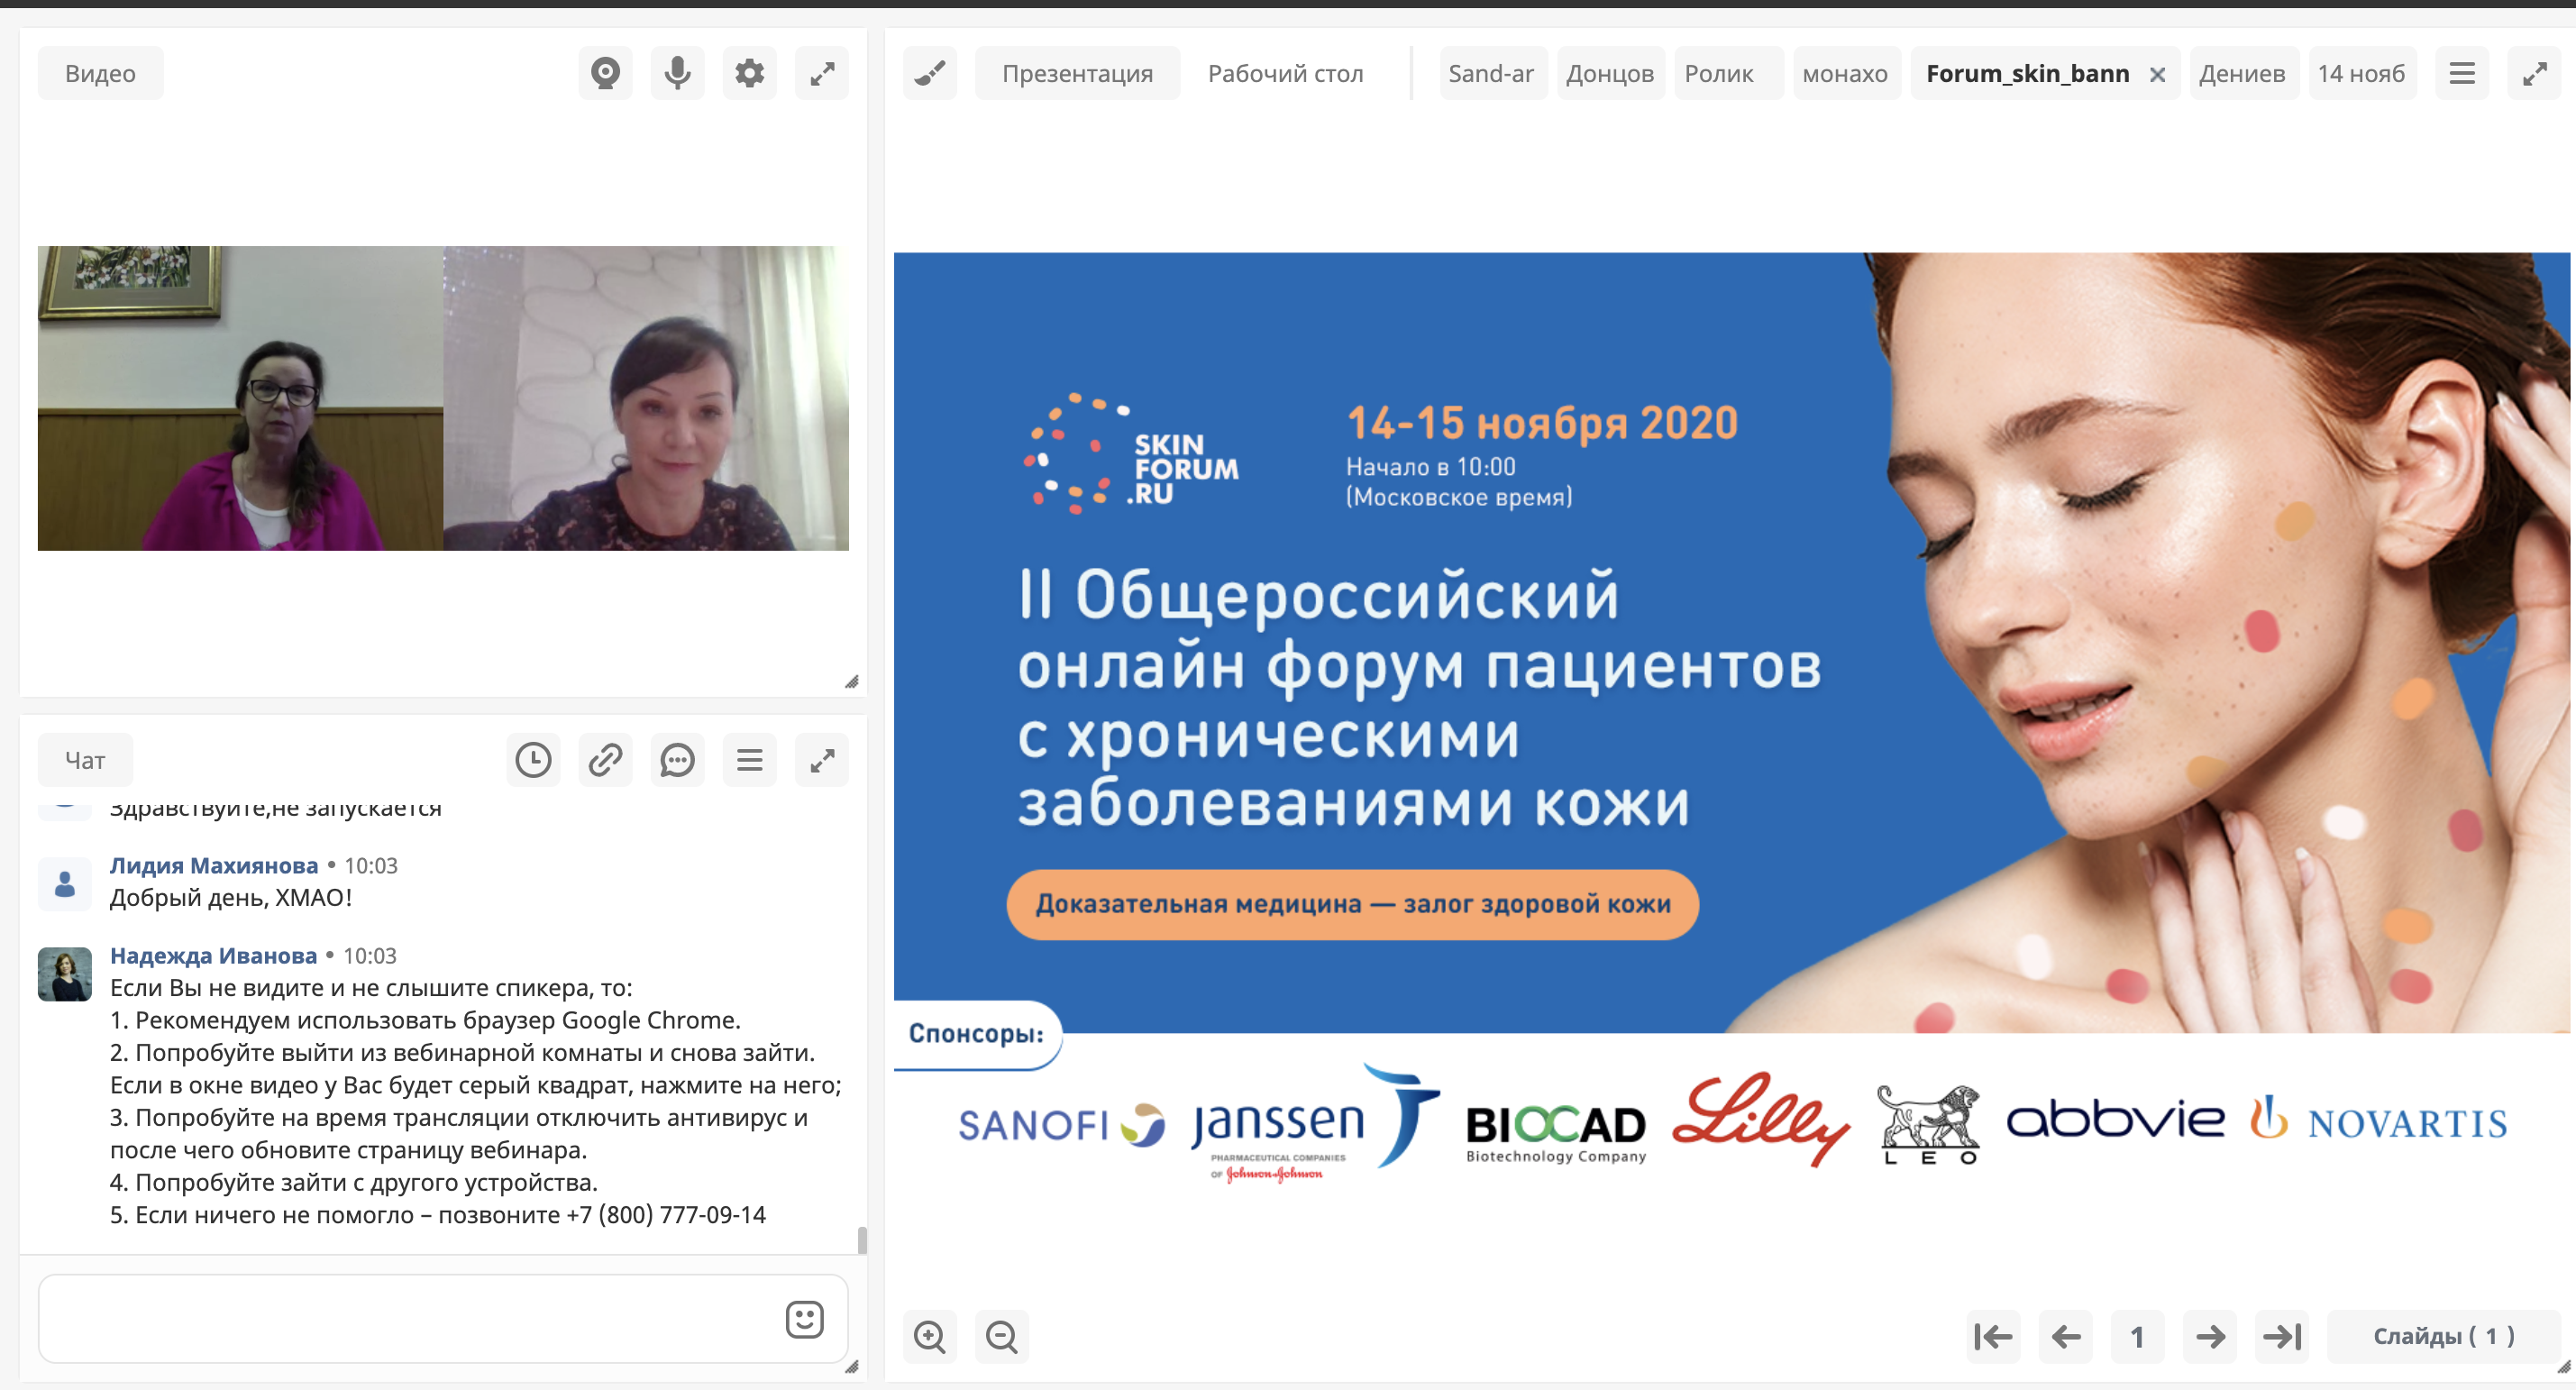 Второй общероссийский форум для людей с кожными заболеваниями прошел в онлайн формате